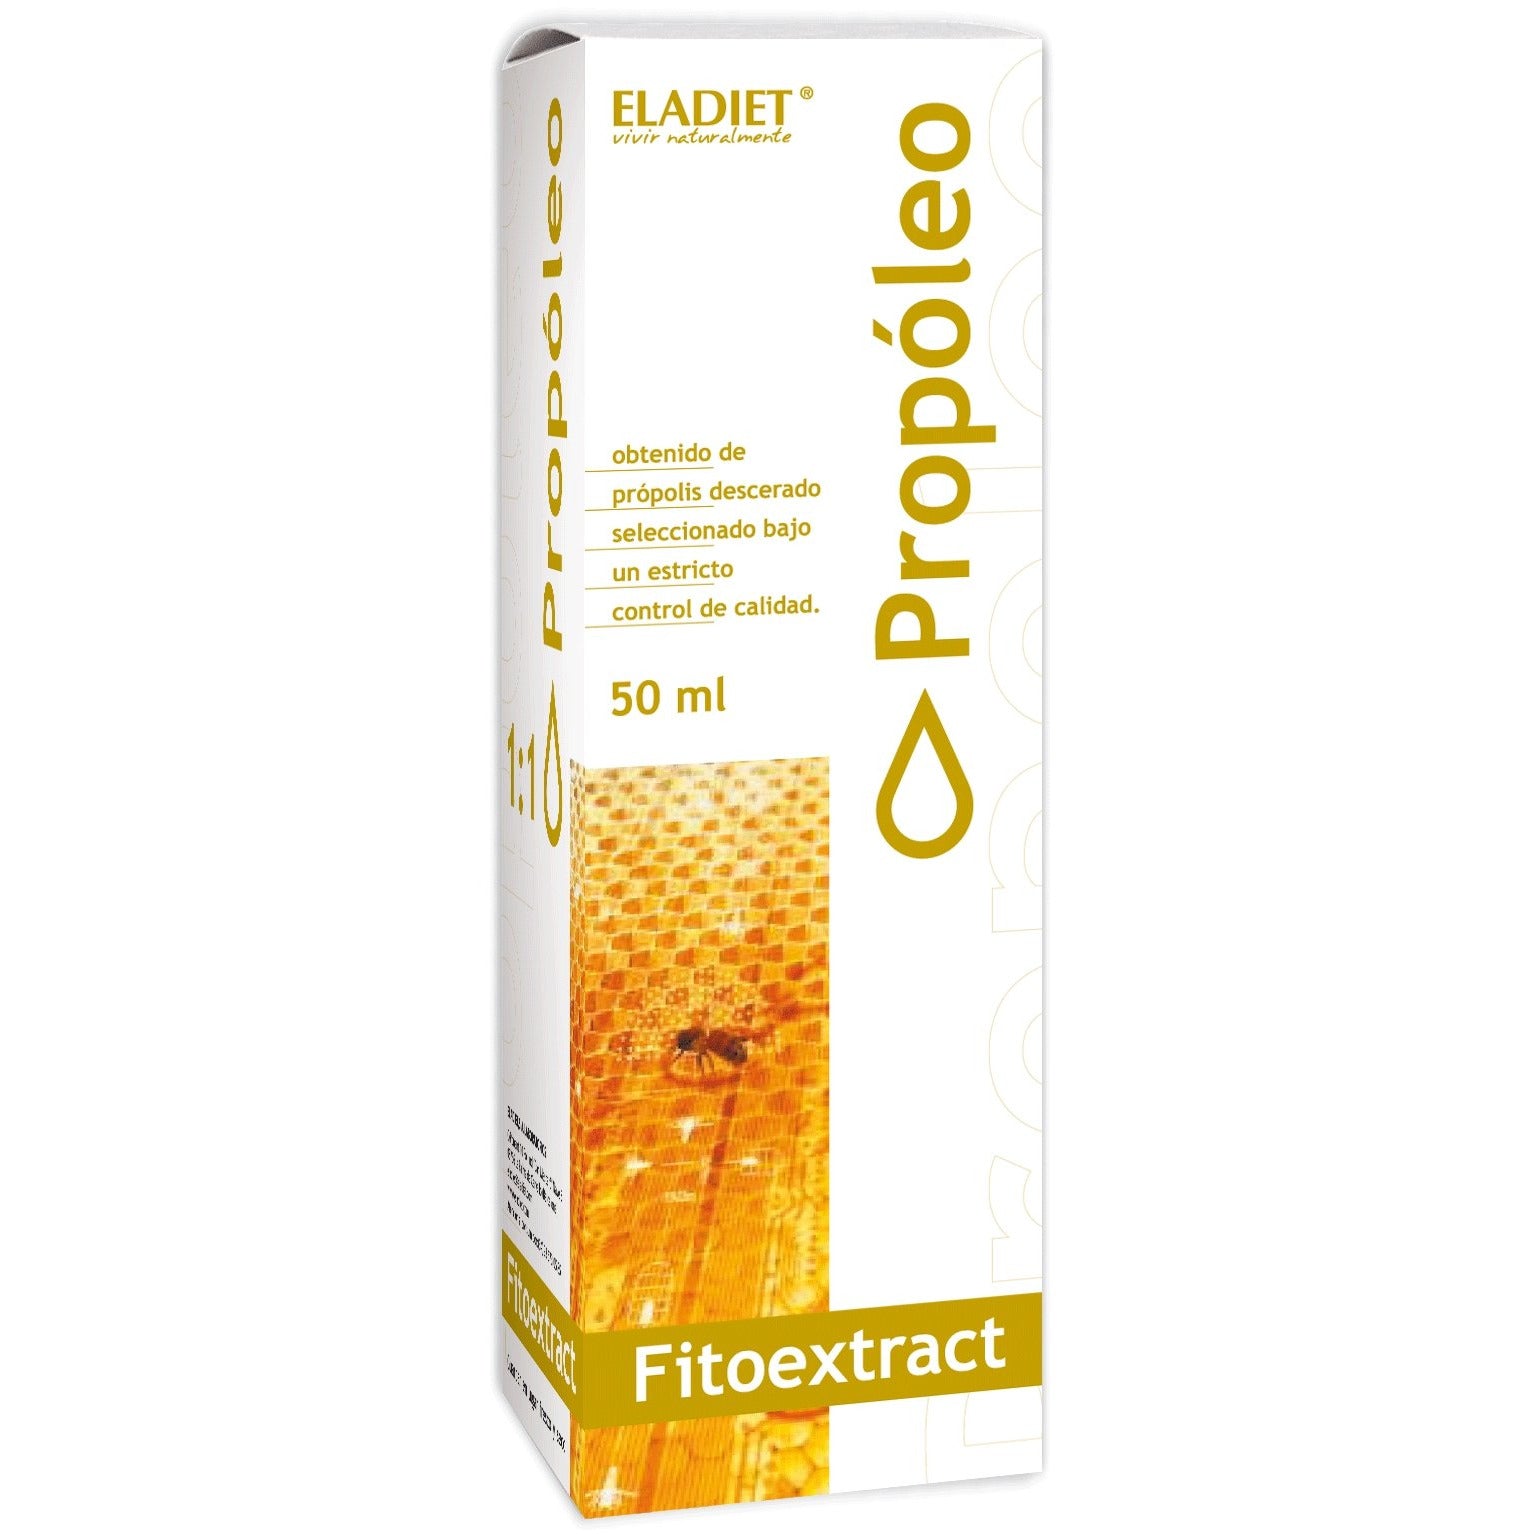 Eladiet - Fitoextrac Propoleo 50Ml - Biopharmacia, Parafarmacia online